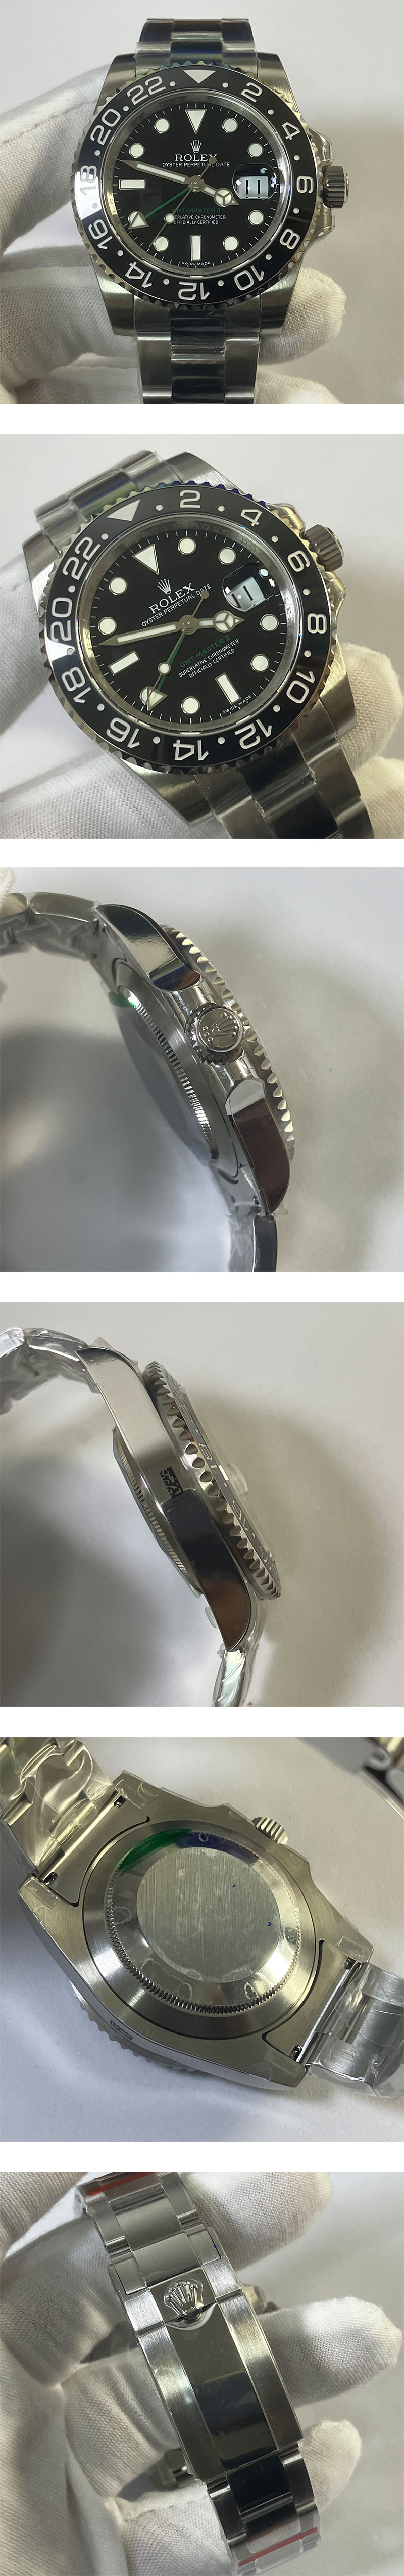 【デザイン奇麗】ロレックス GMTマスター II 116710LNコピー時計